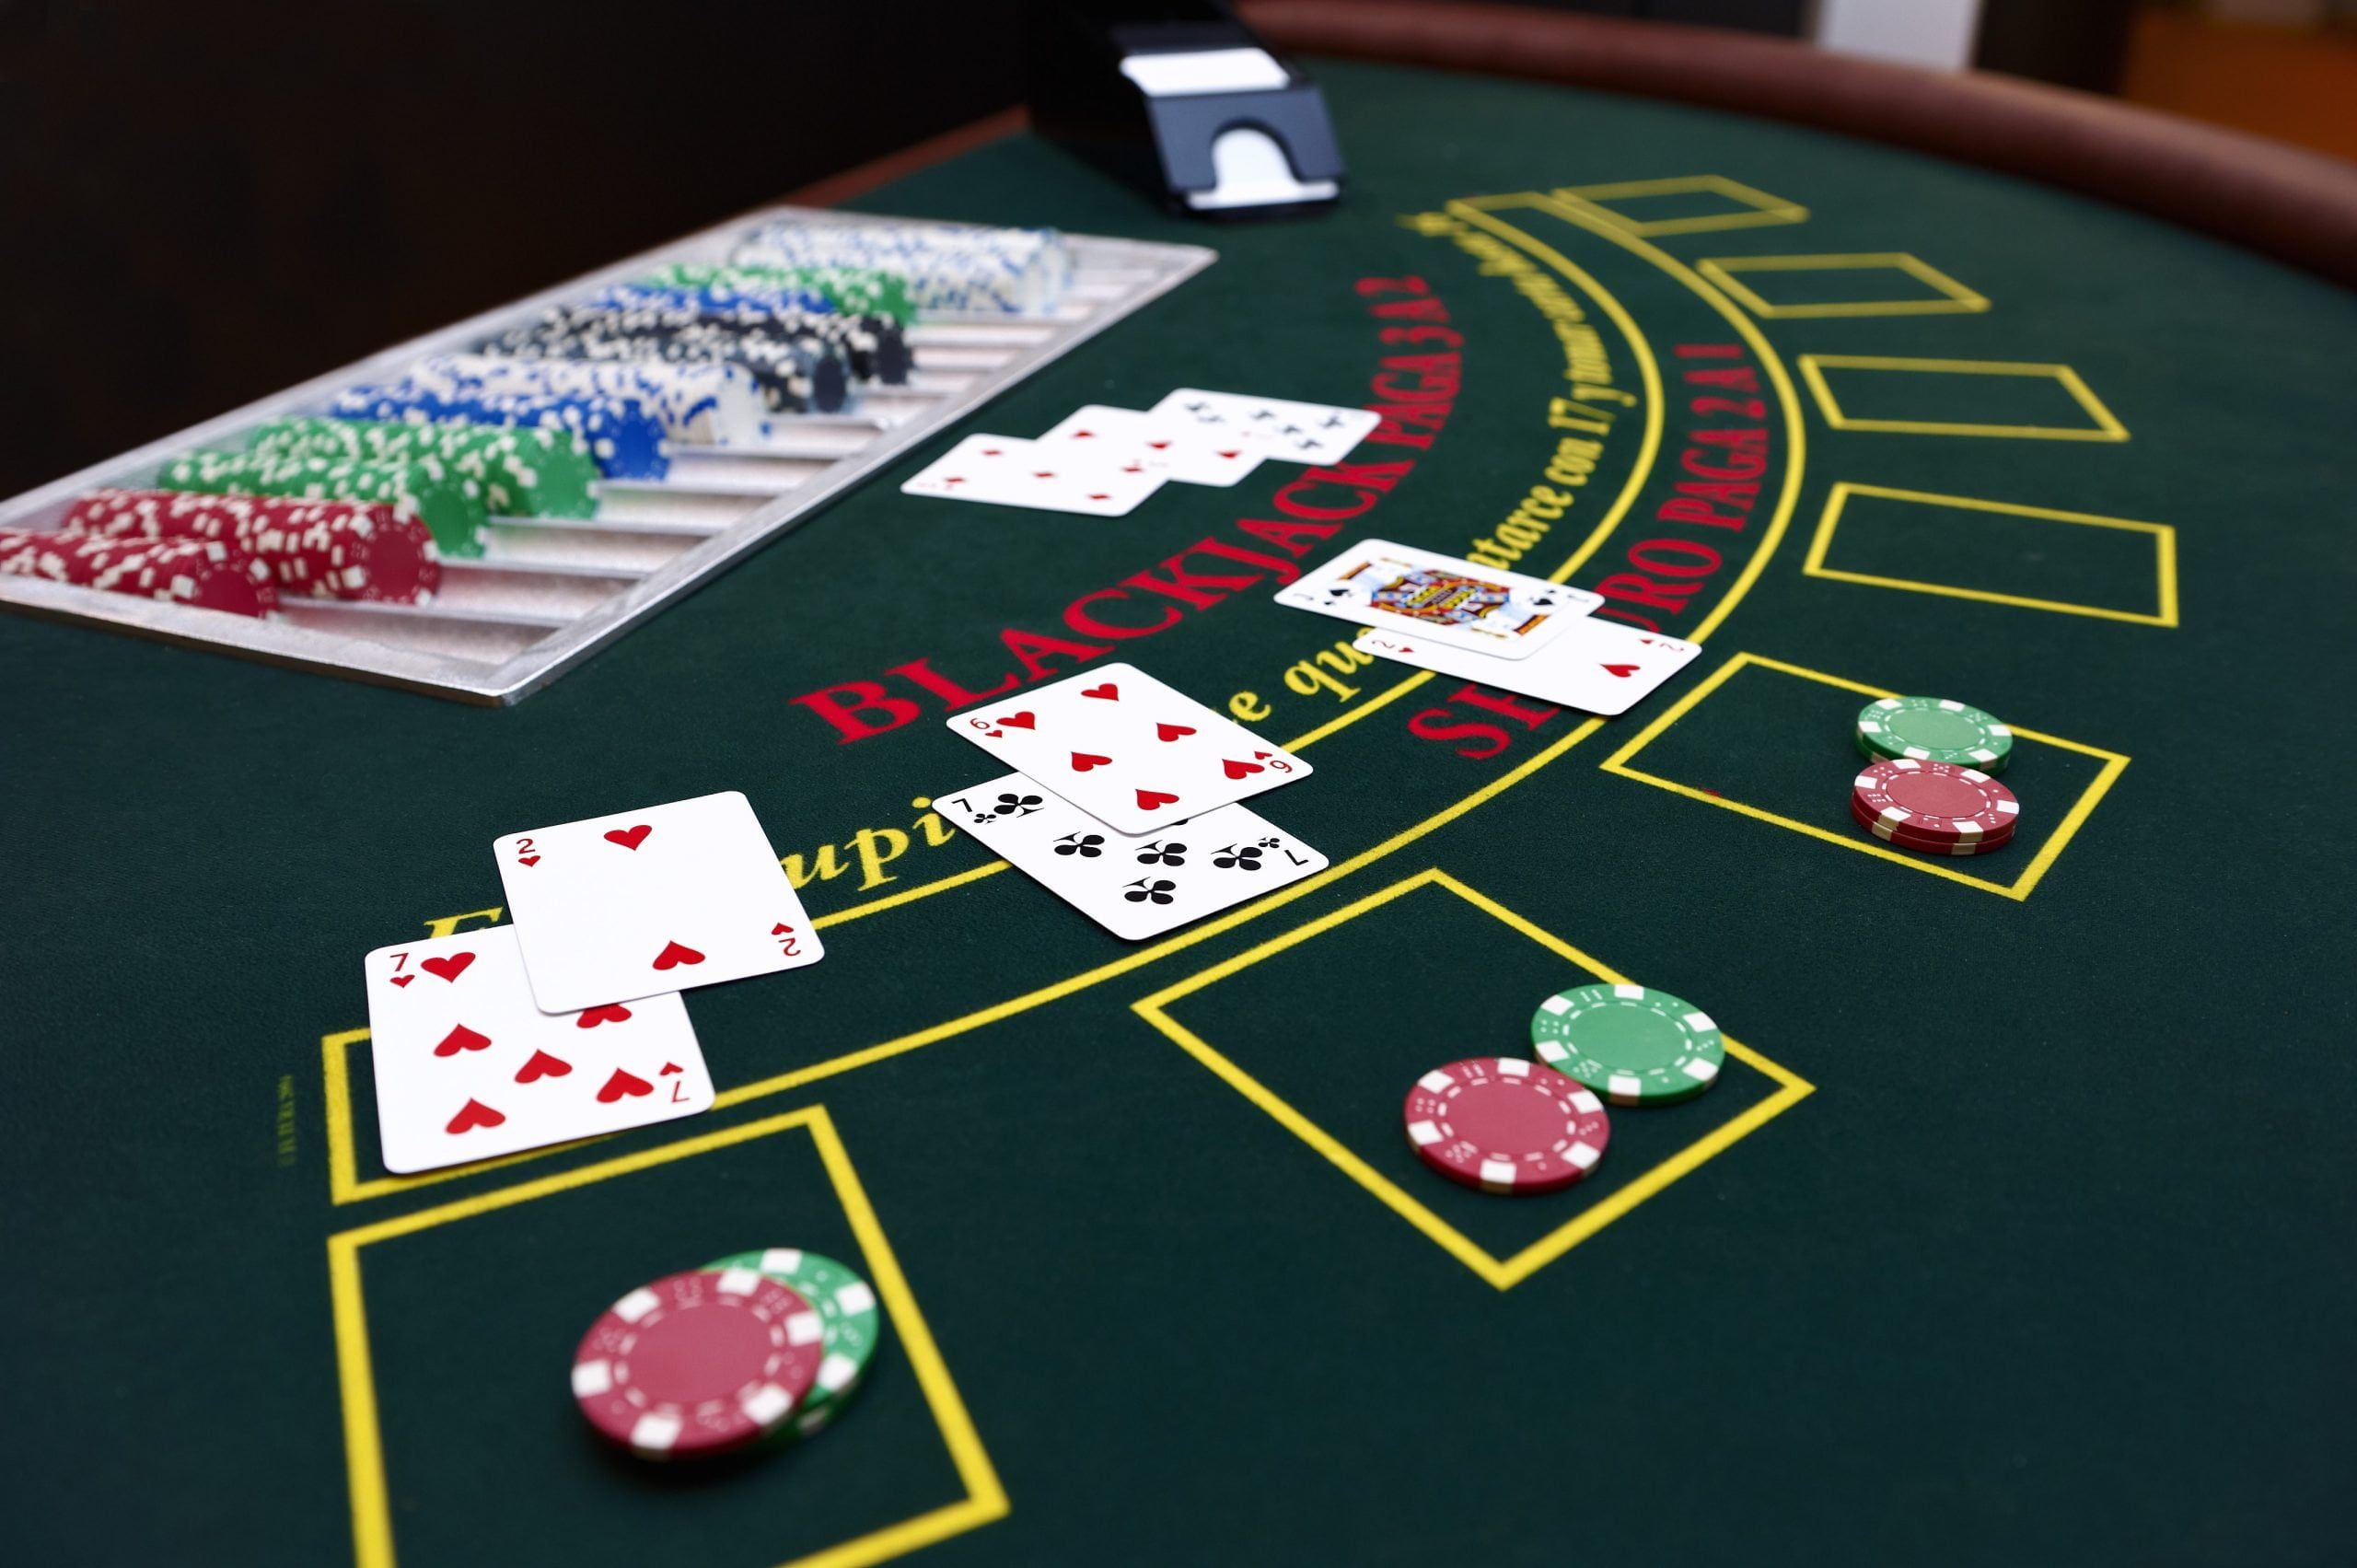 Chi tiết về cách chơi và cách tính điểm trong bài blackjack   